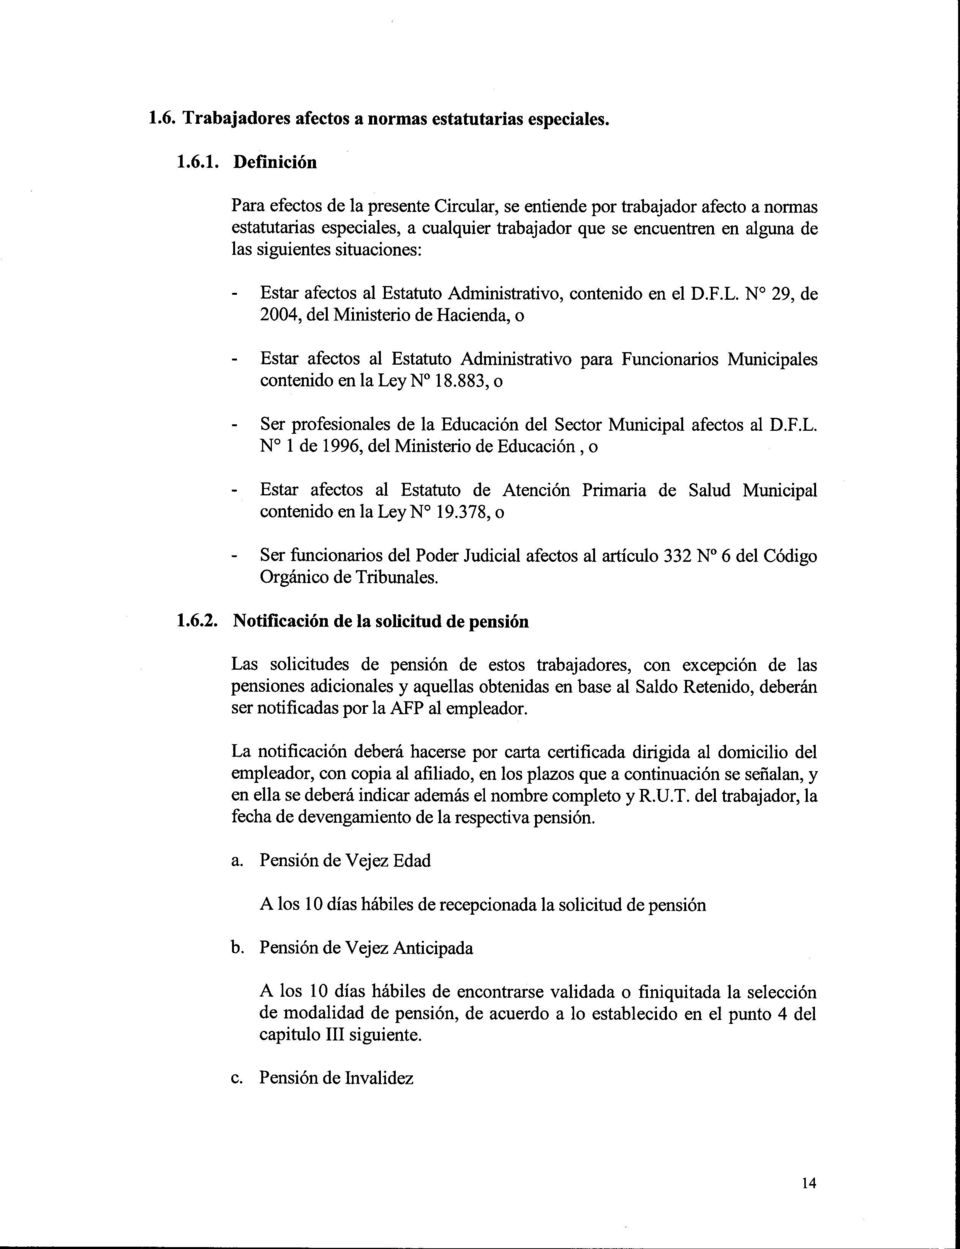 No 29, de 2004, del Ministerio de Hacienda, o - Estar afectos al Estatuto Administrativo para Funcionarios Municipales contenido en la LeyNo 18.